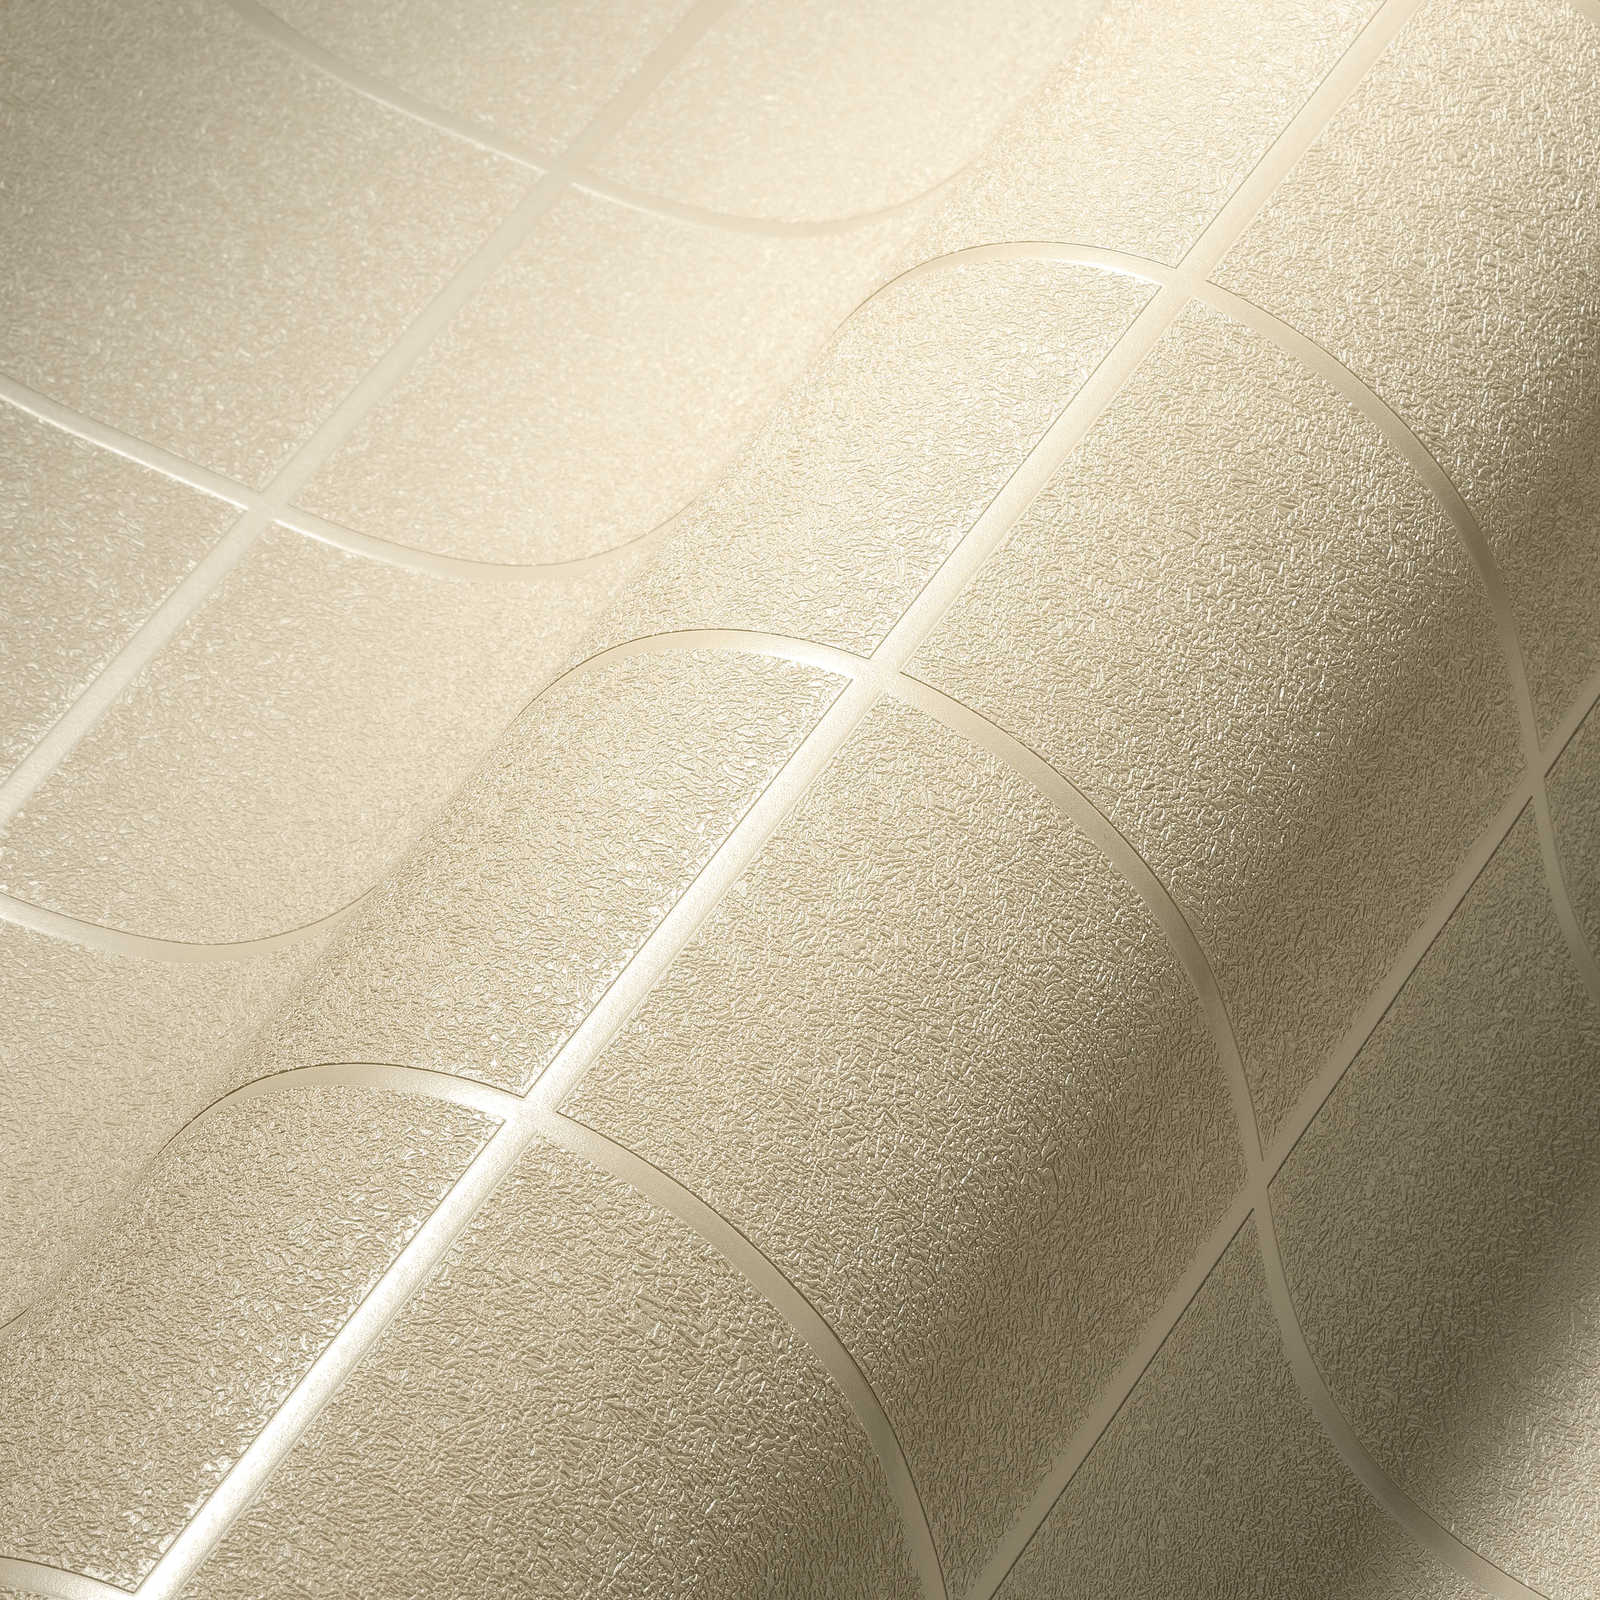             Behang met tegelpatroon en 3D-effect, gevlekt - zilver, wit, crème
        